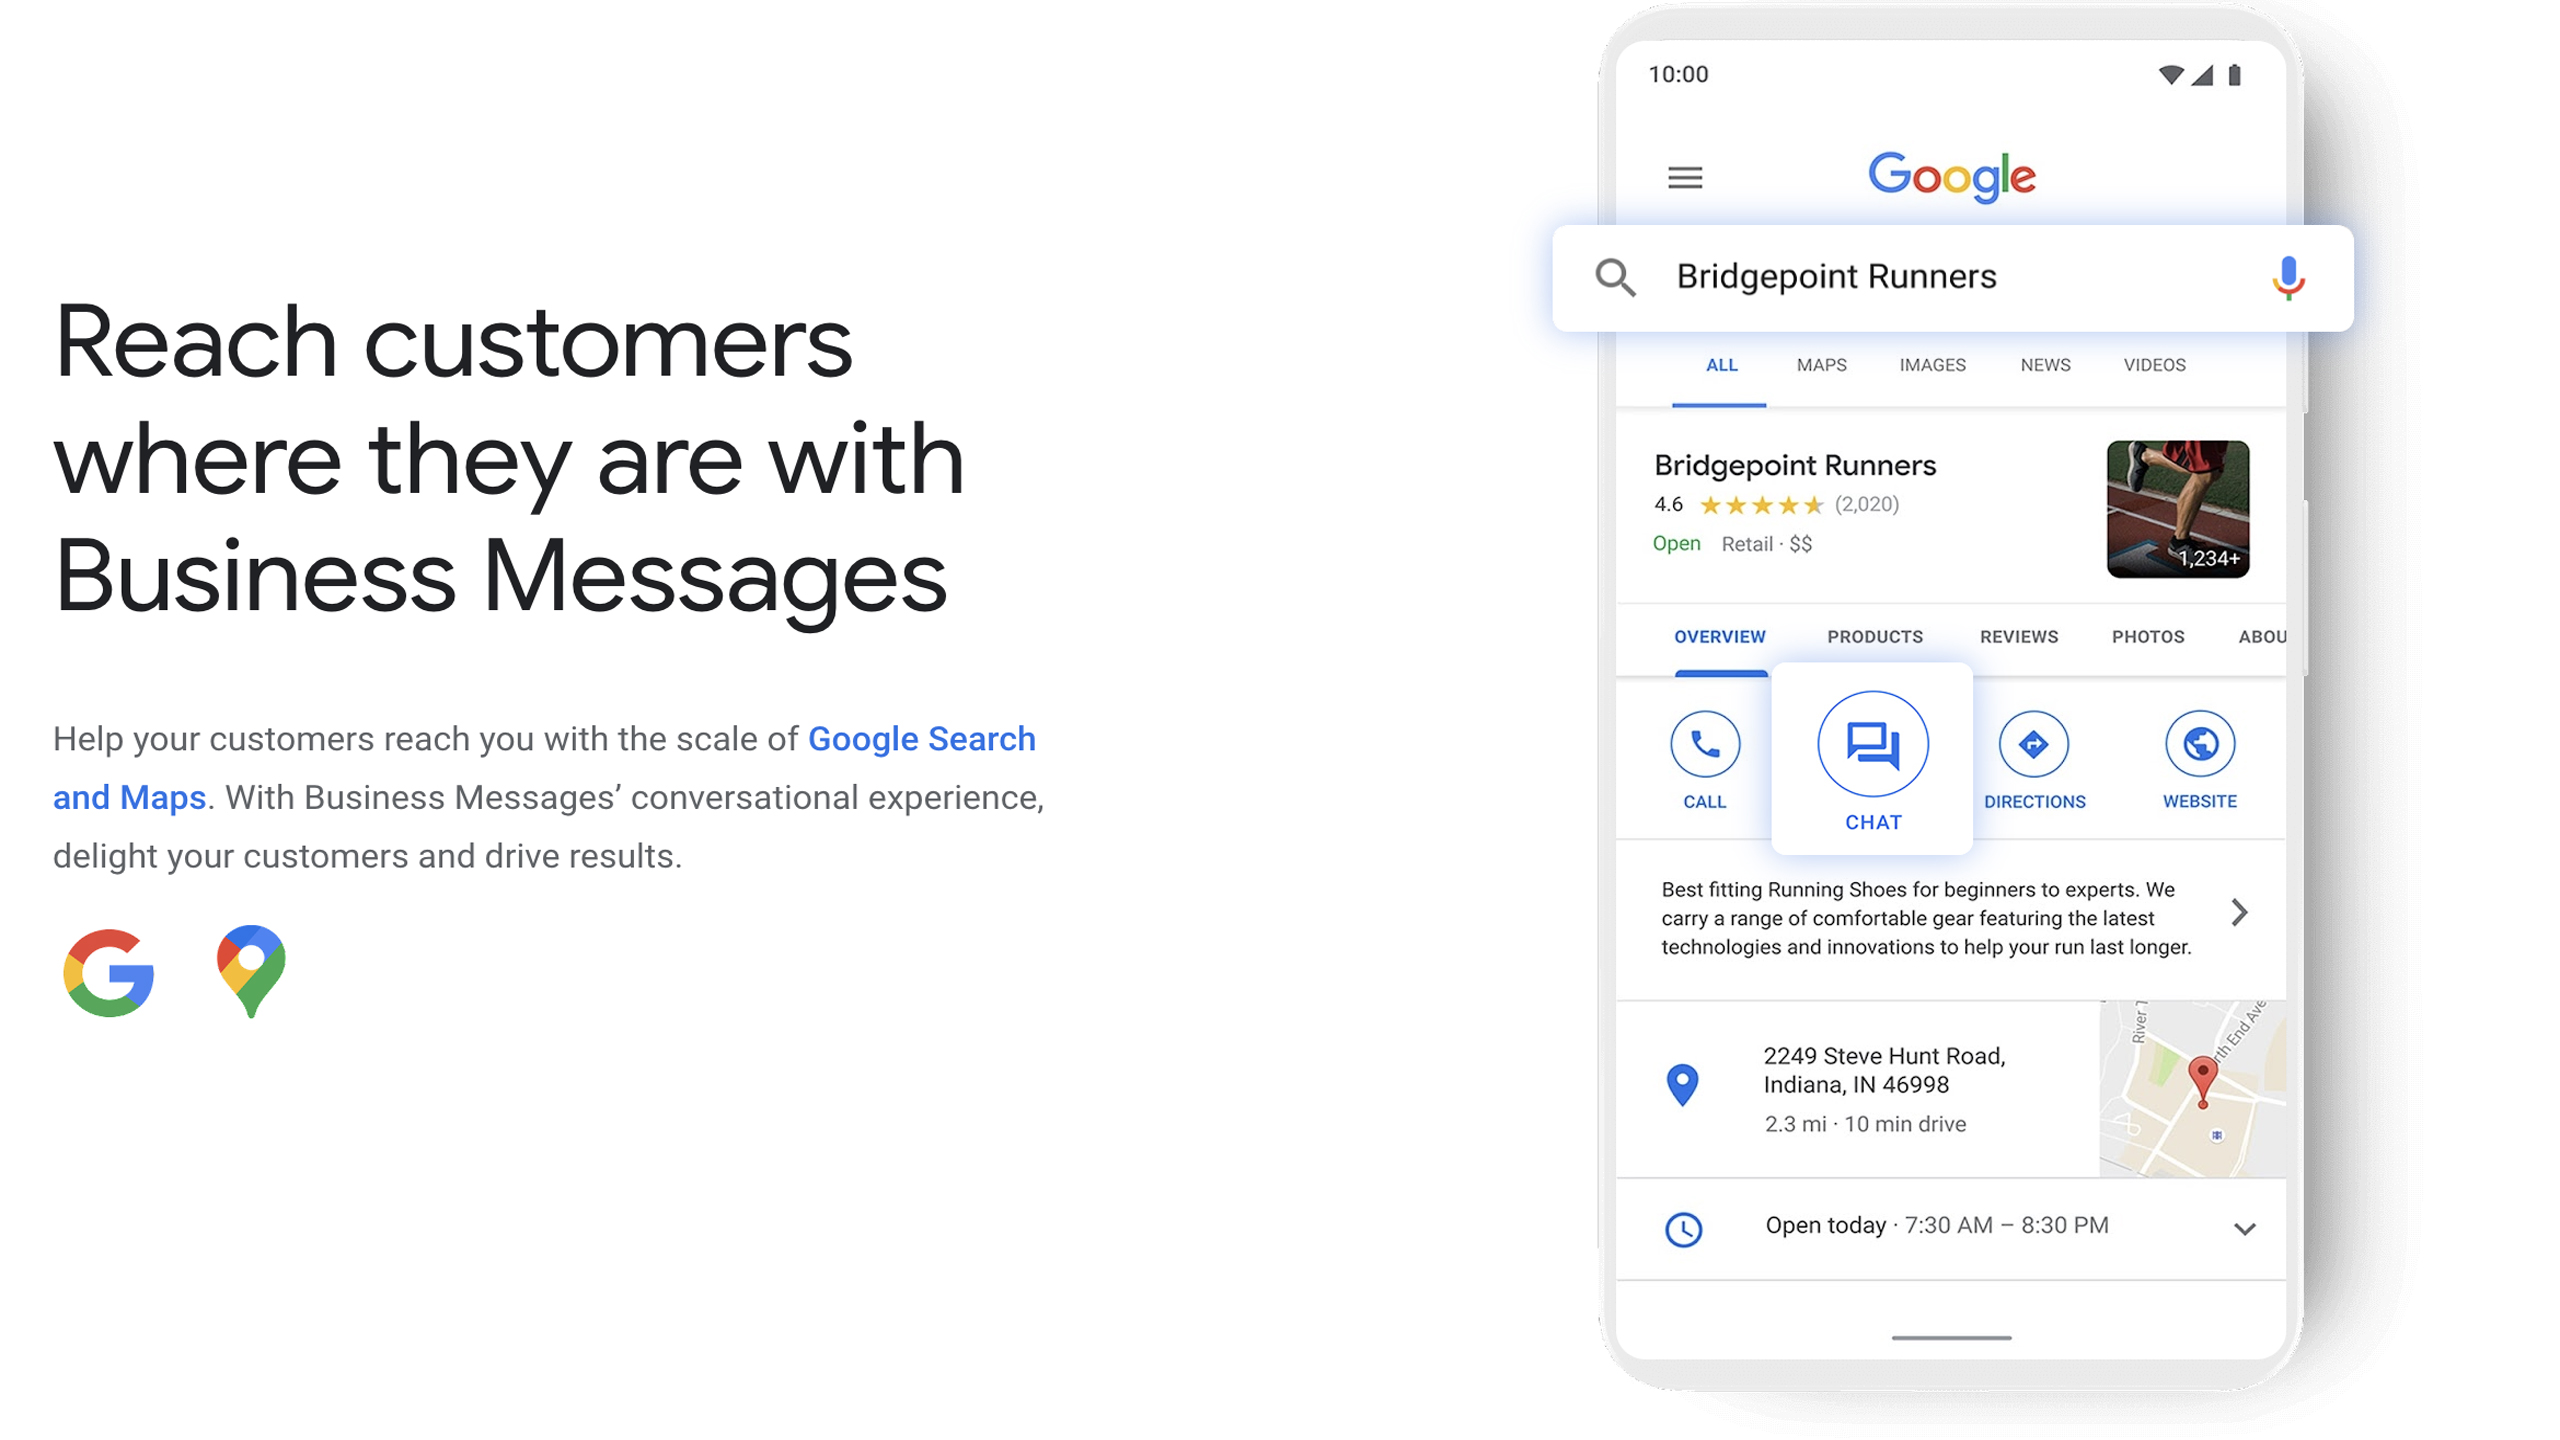 Google Business Message là một dịch vụ miễn phí của Google cho các doanh nghiệp. Nó cho phép khách hàng liên hệ với doanh nghiệp của họ bằng cách gửi tin nhắn trực tiếp trên trang doanh nghiệp trên Google Maps hoặc khi tìm kiếm trên Google.